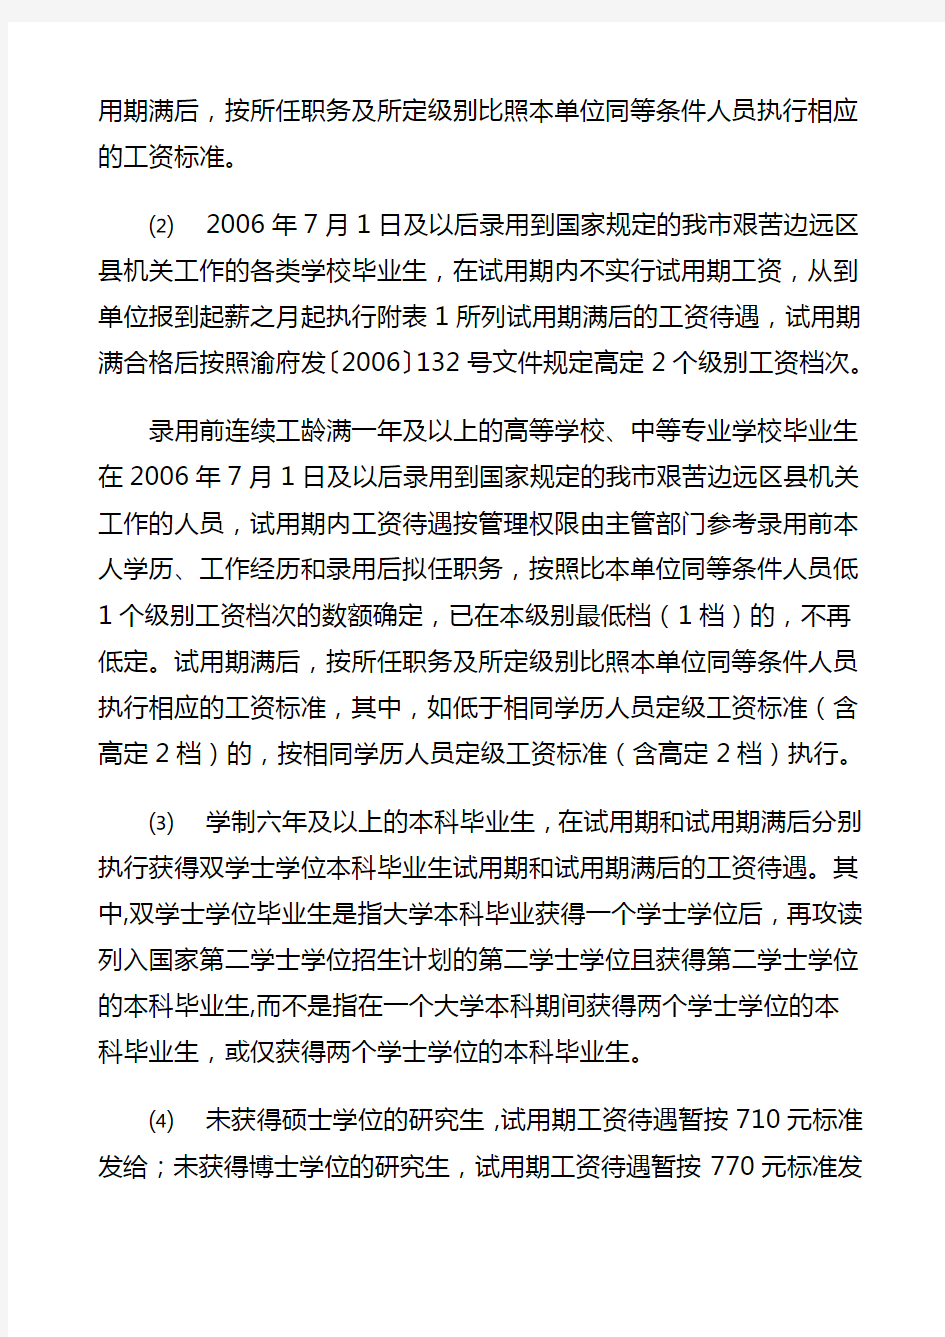 重庆市人事局关于机关事业单位新录用聘用工作人员工资待遇问题的通知